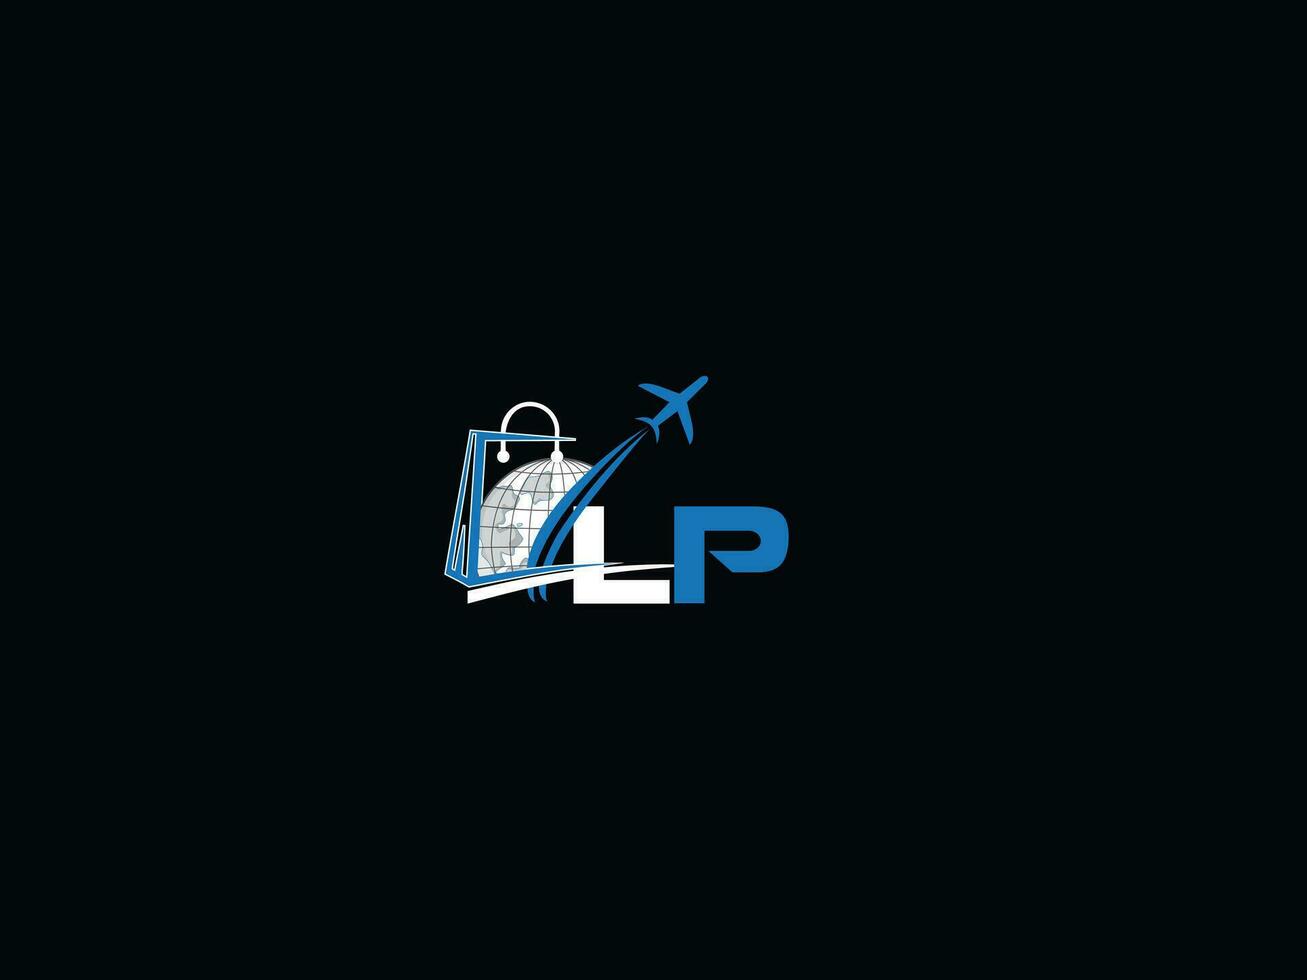 semplice lp globale logo vettore, iniziale in viaggio lp logo lettera vettore